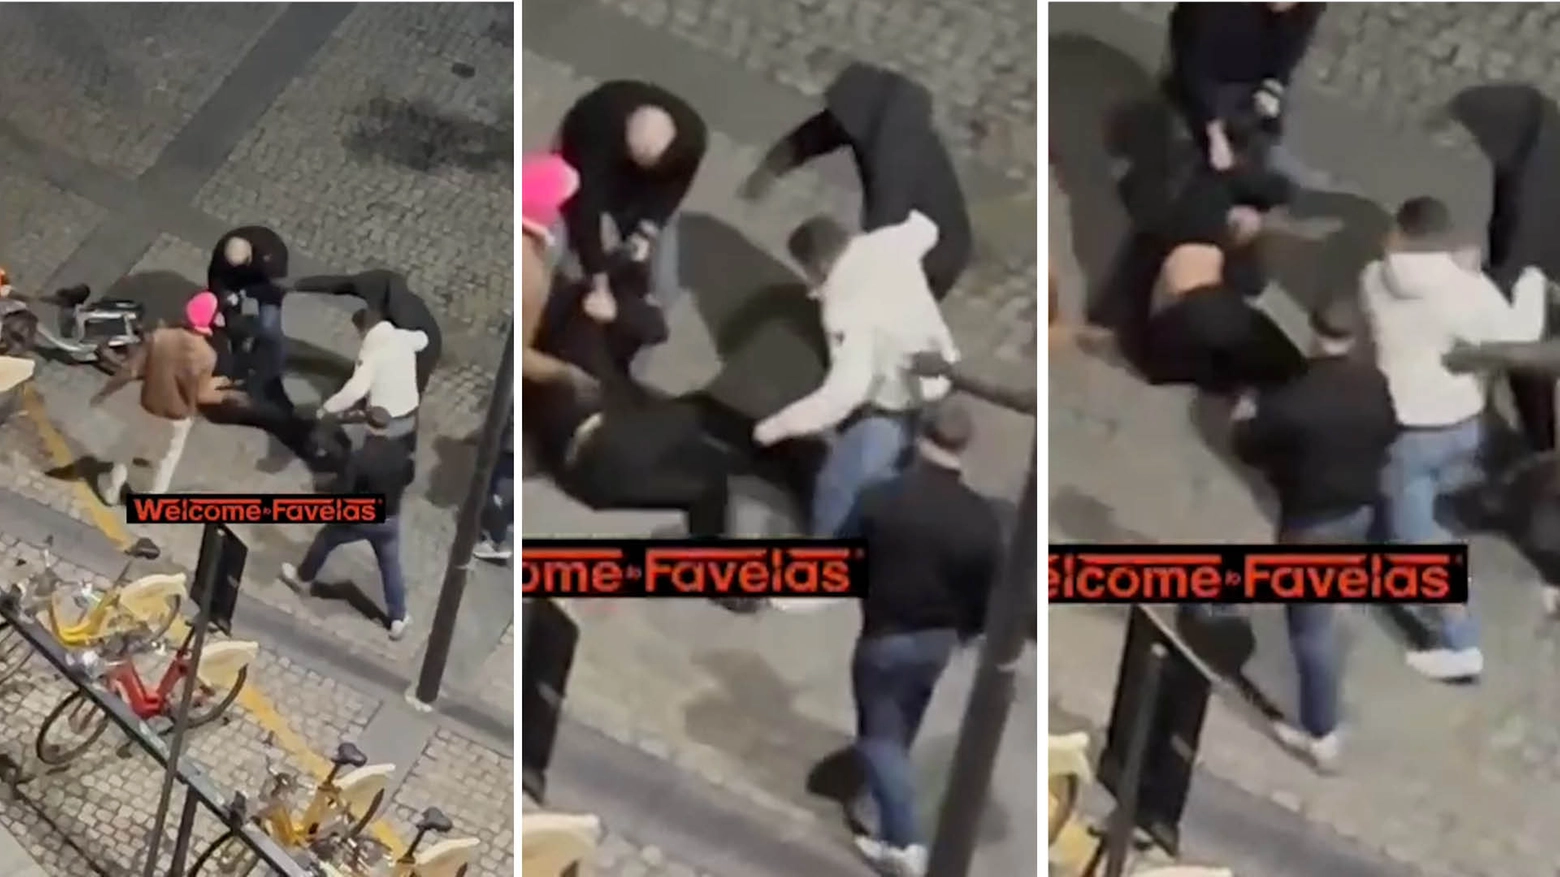 Alcuni frame del pestaggio presi dal video della pagina Instagram Welcome to Favelas